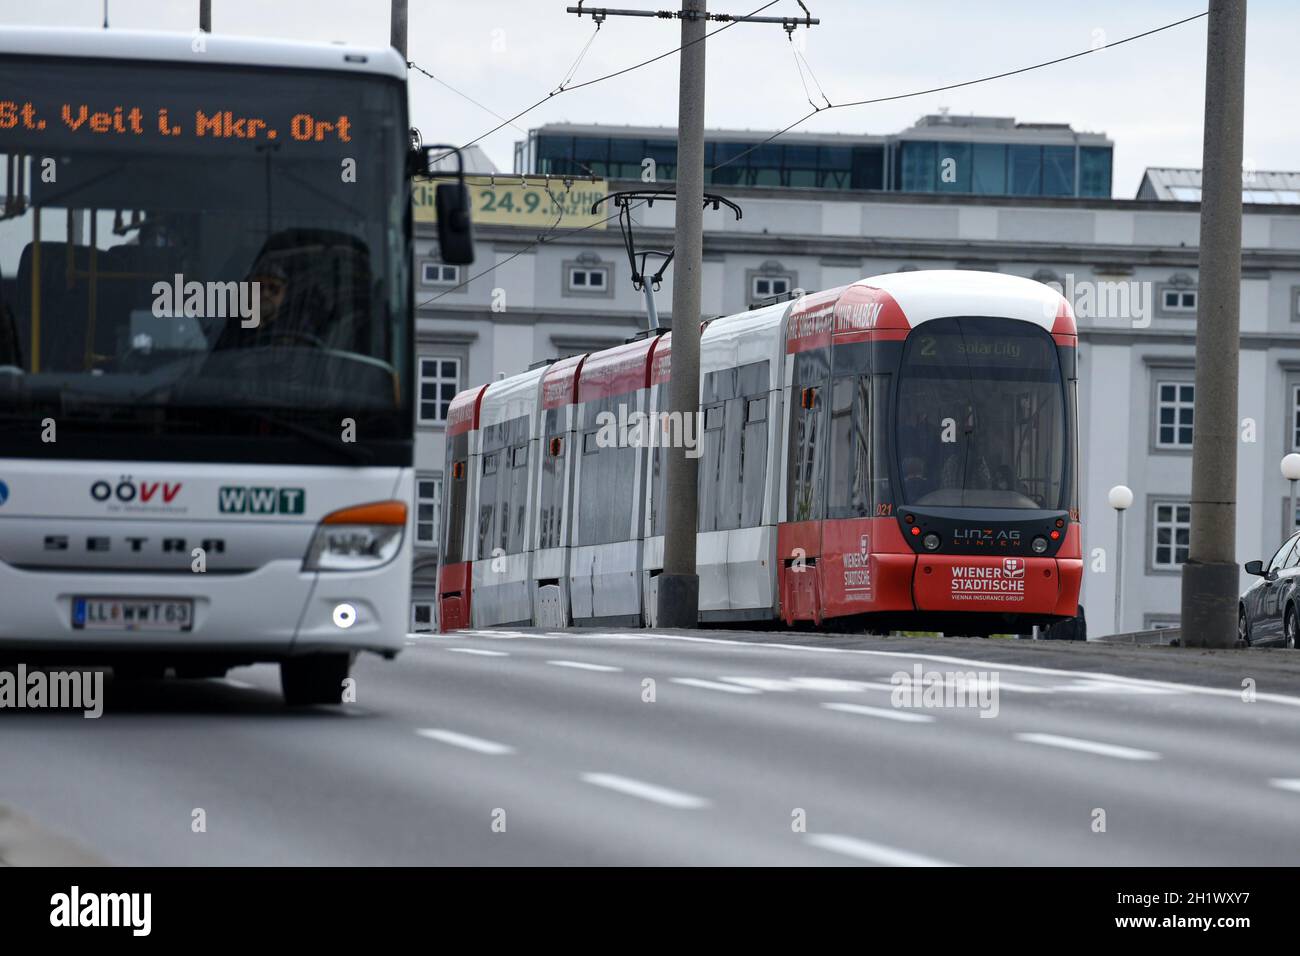 Straßenbahn in Linz (Oberösterreich, Österreich) - Tram in Linz (Upper Austria, Austria) Stock Photo